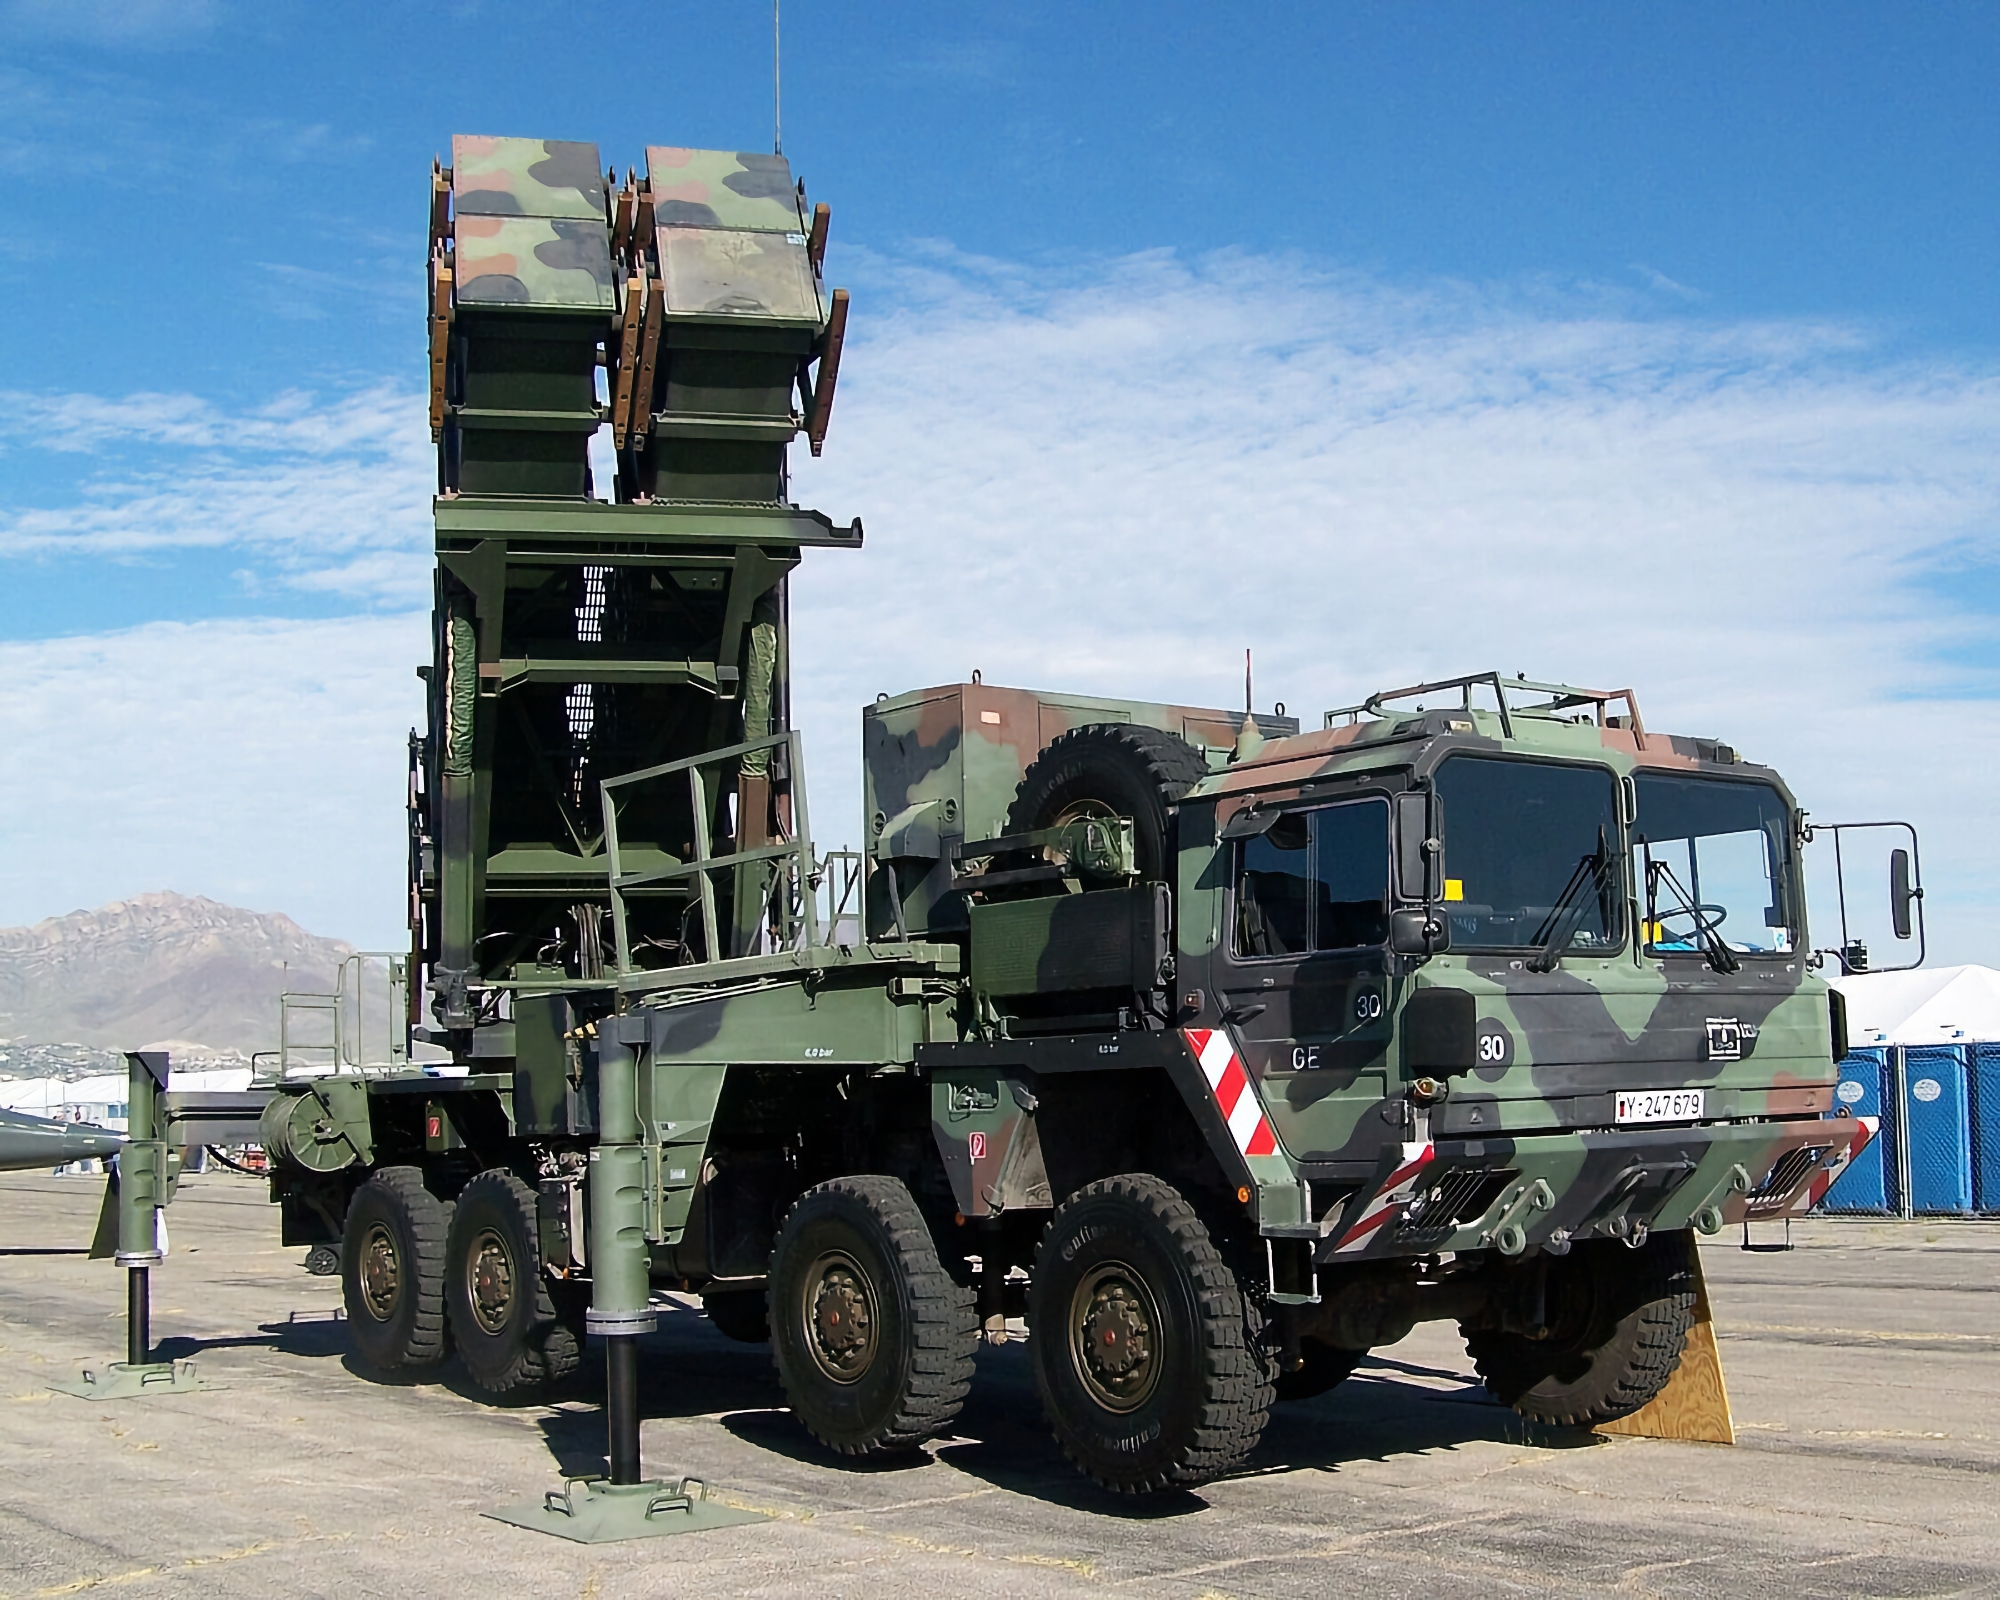 Drei Trägerraketen und ein Radar: Die Niederlande liefern zusätzliche Komponenten für Patriot SAMs an die Ukraine